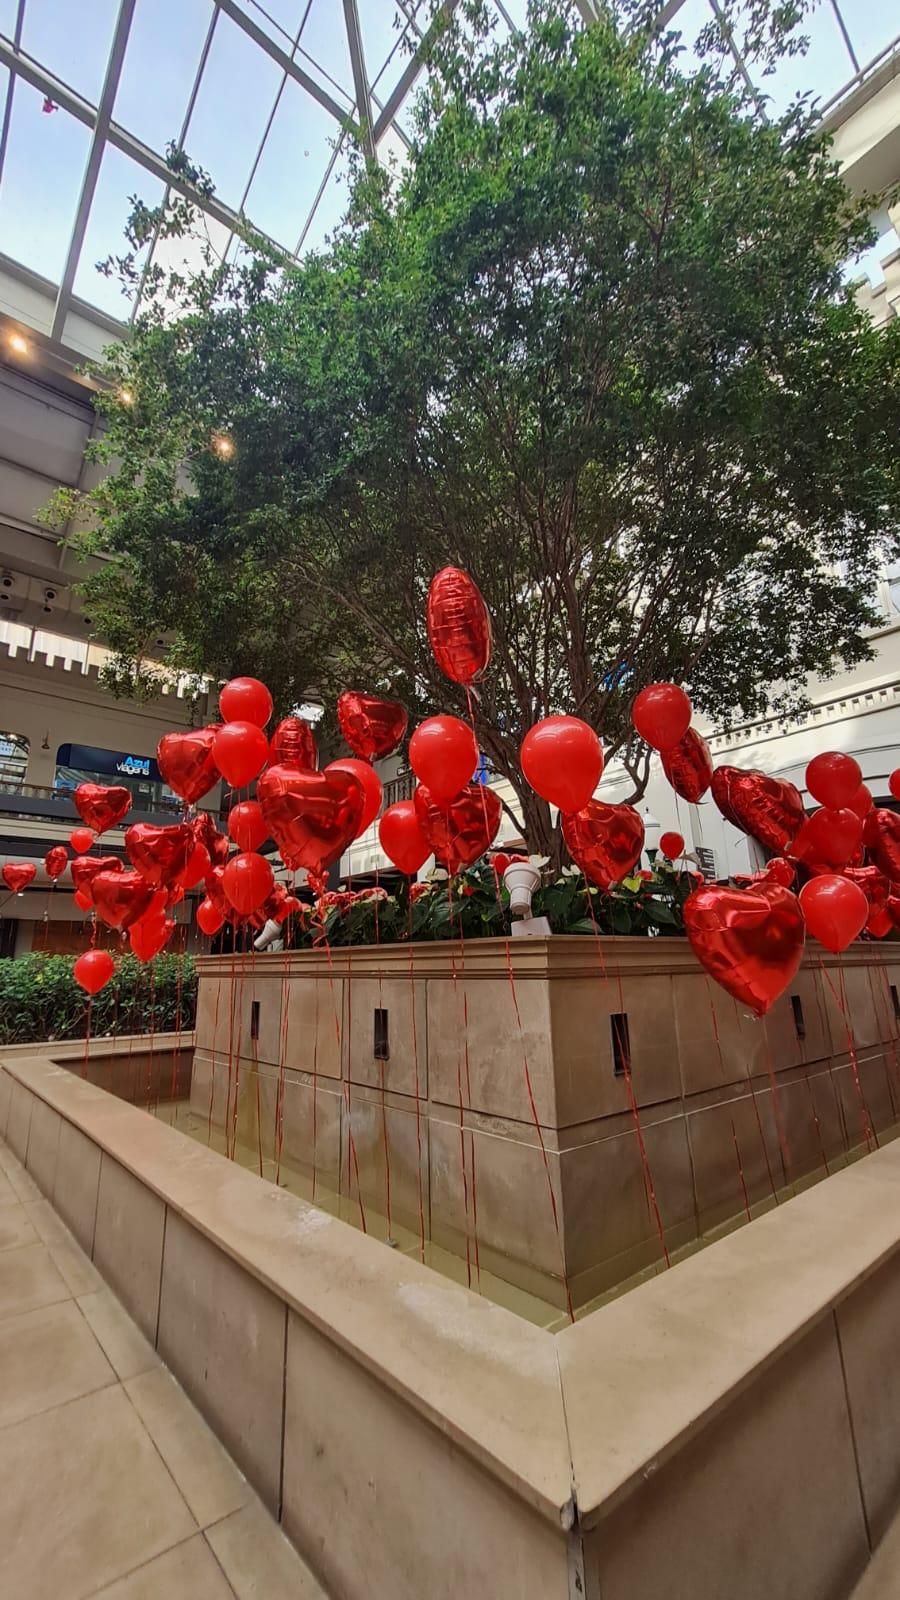 Dia dos Namorados: shopping será decorado com centenas de balões em formato de coração 